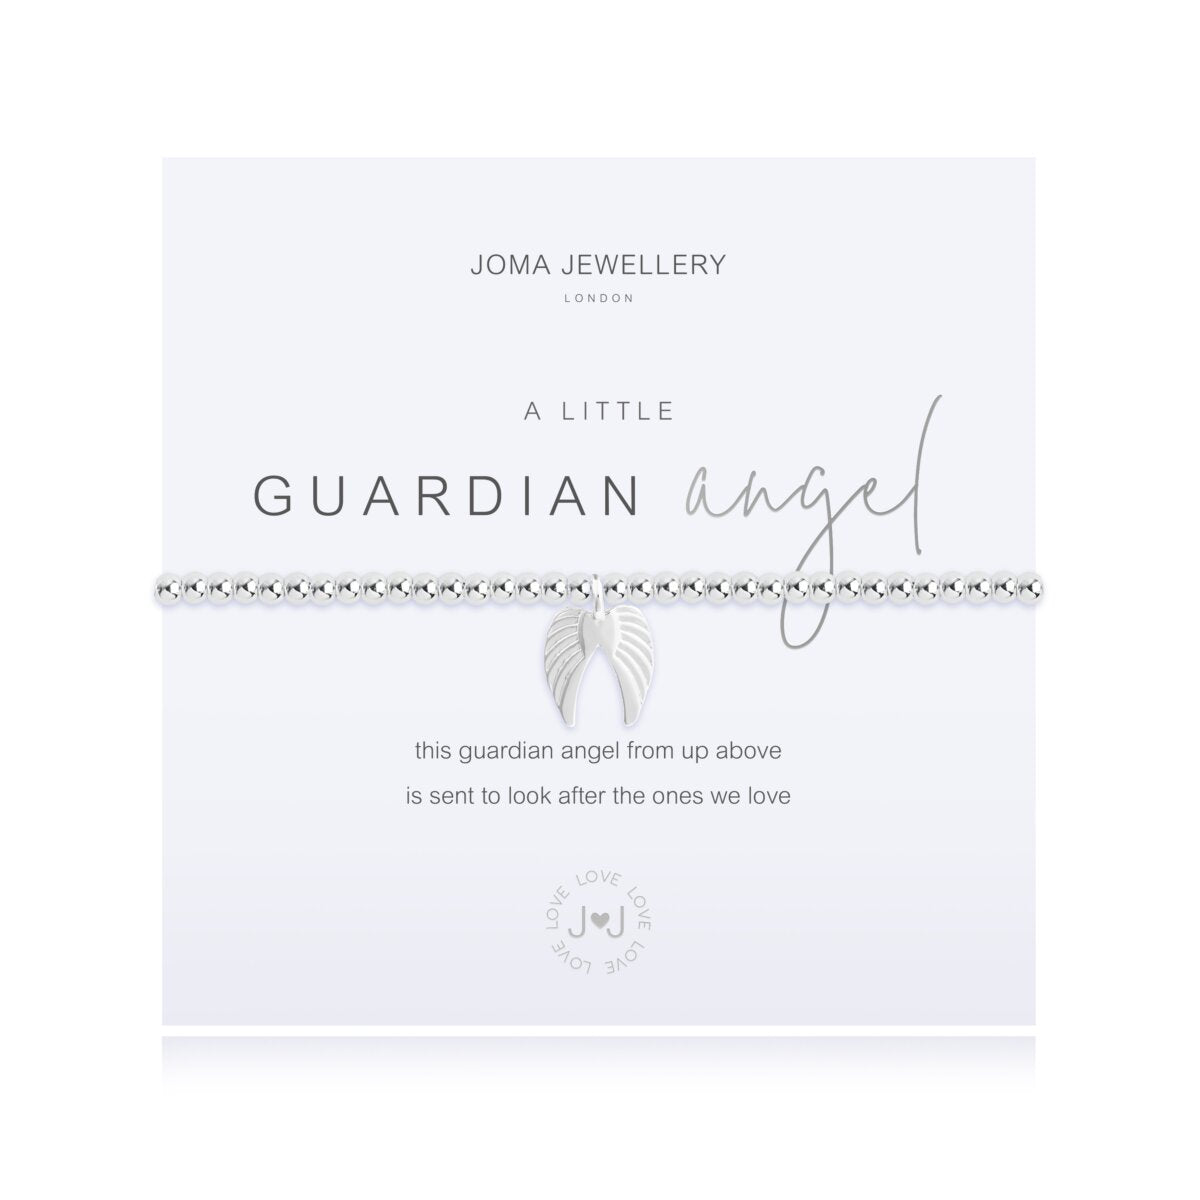 Joma Jewellery 'A Little' Guardian Angel